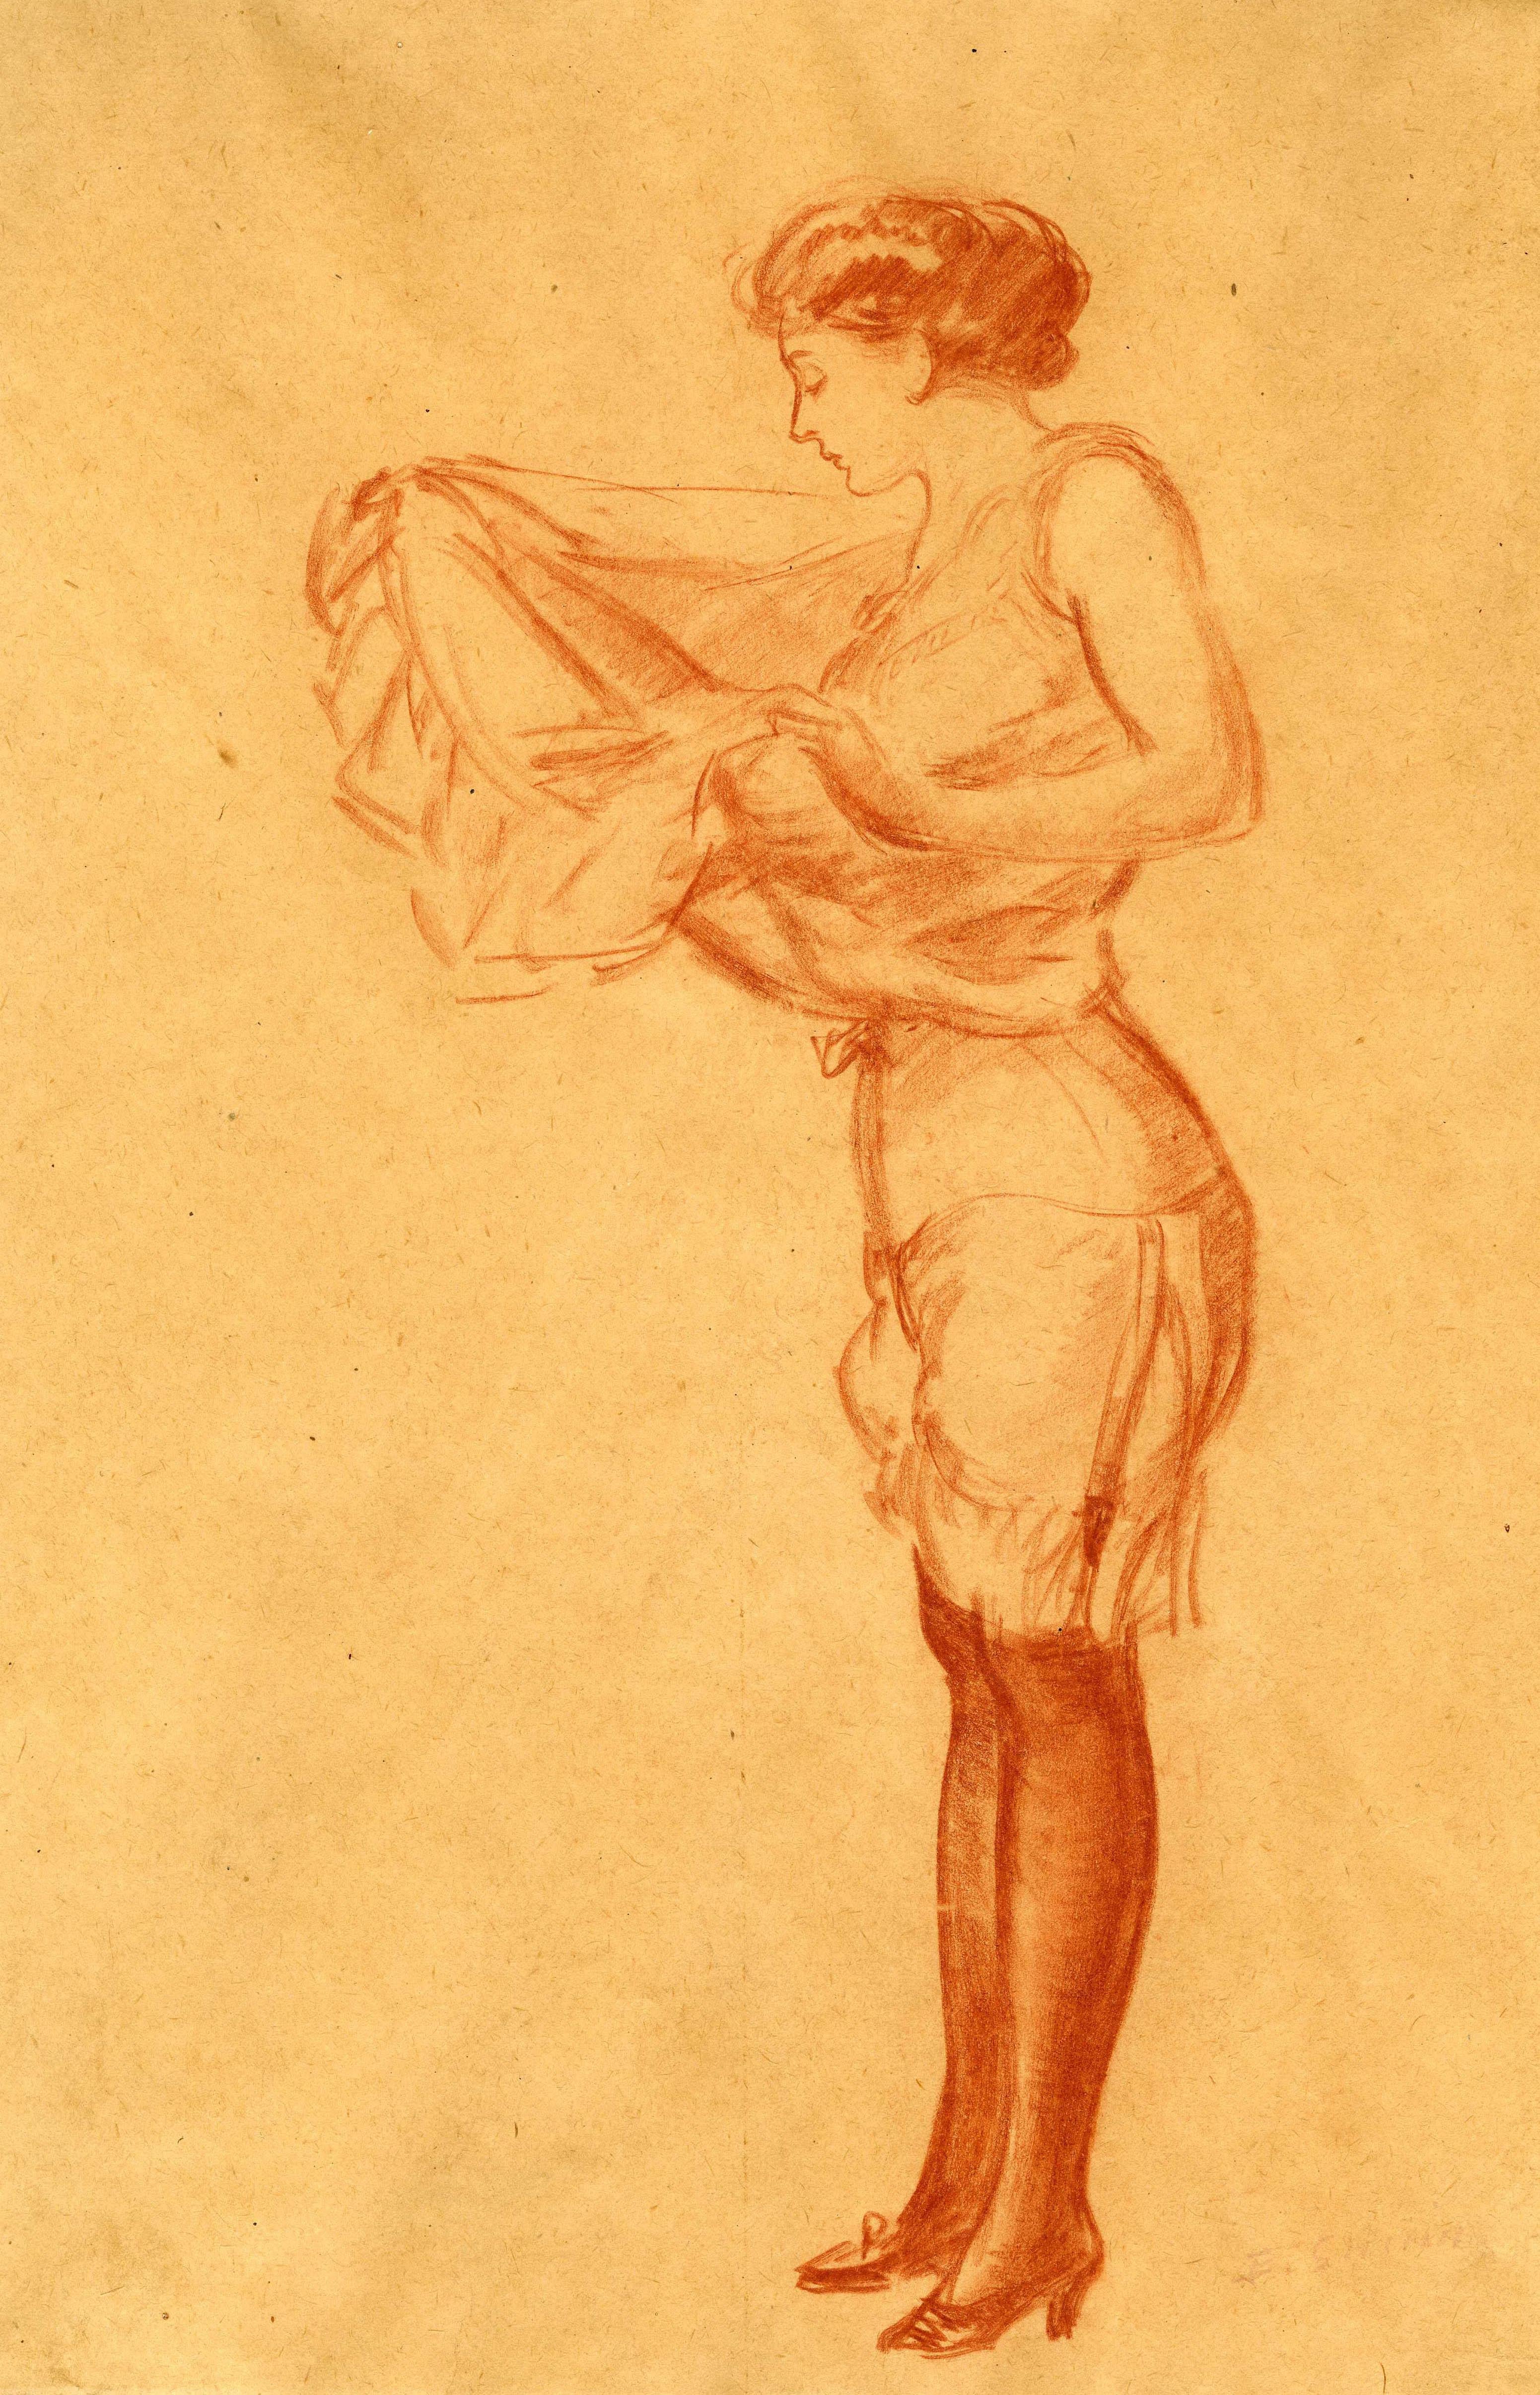 Frau, die an einem Slip zieht
Konterfei auf Papier, um 1910
Signiert unten rechts: 